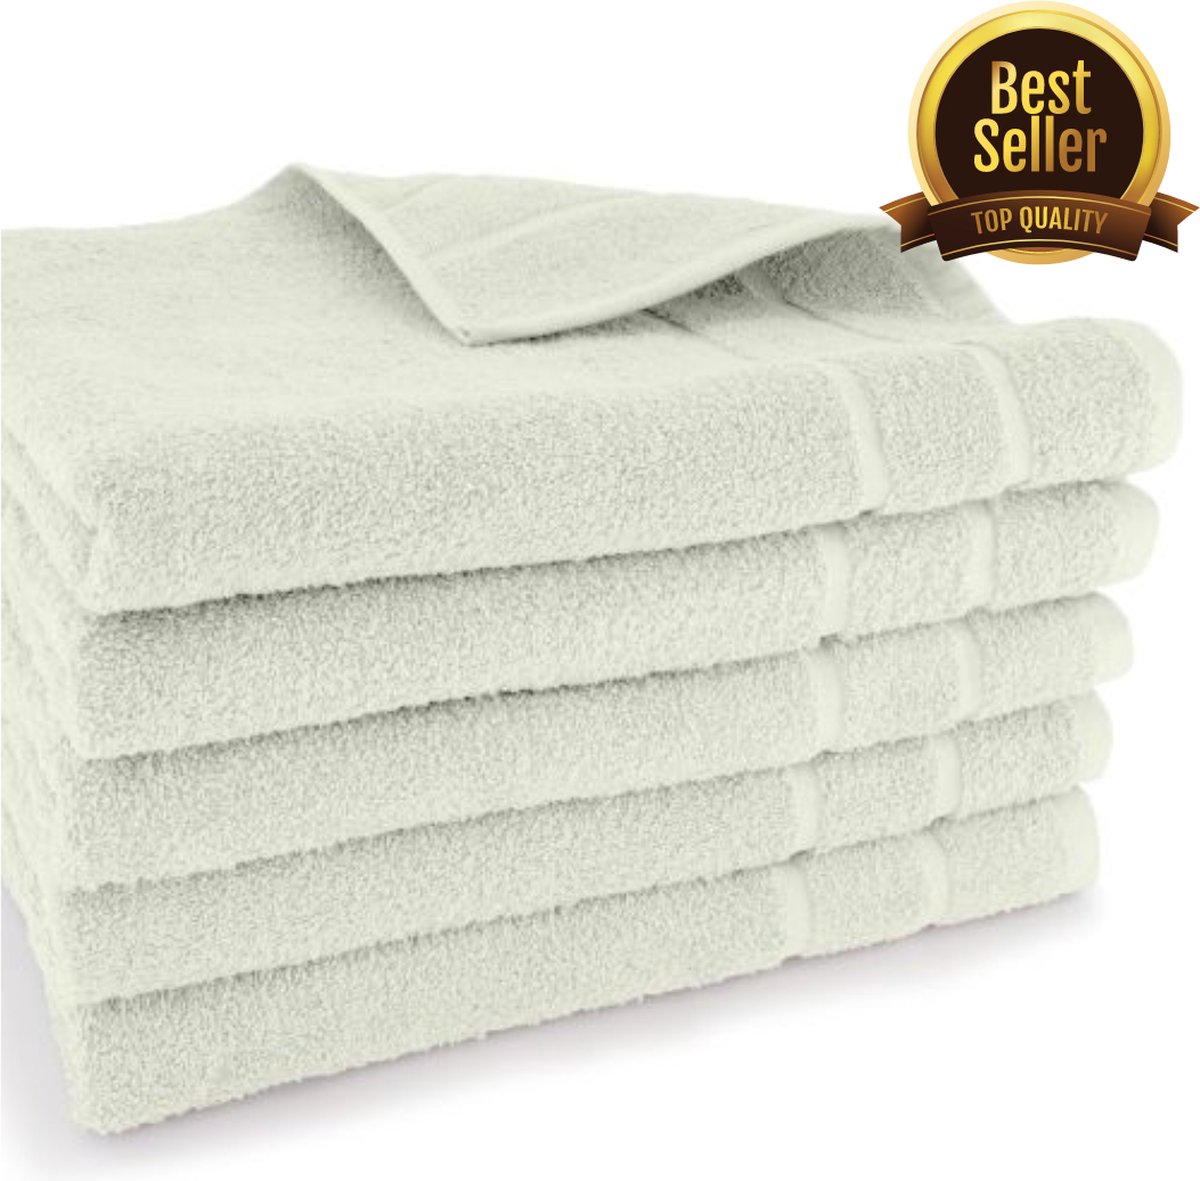 Exclusieve Handdoeken - Hotelkwaliteit - 50x100cm - Creme/Off White - Set van 5 stuks!